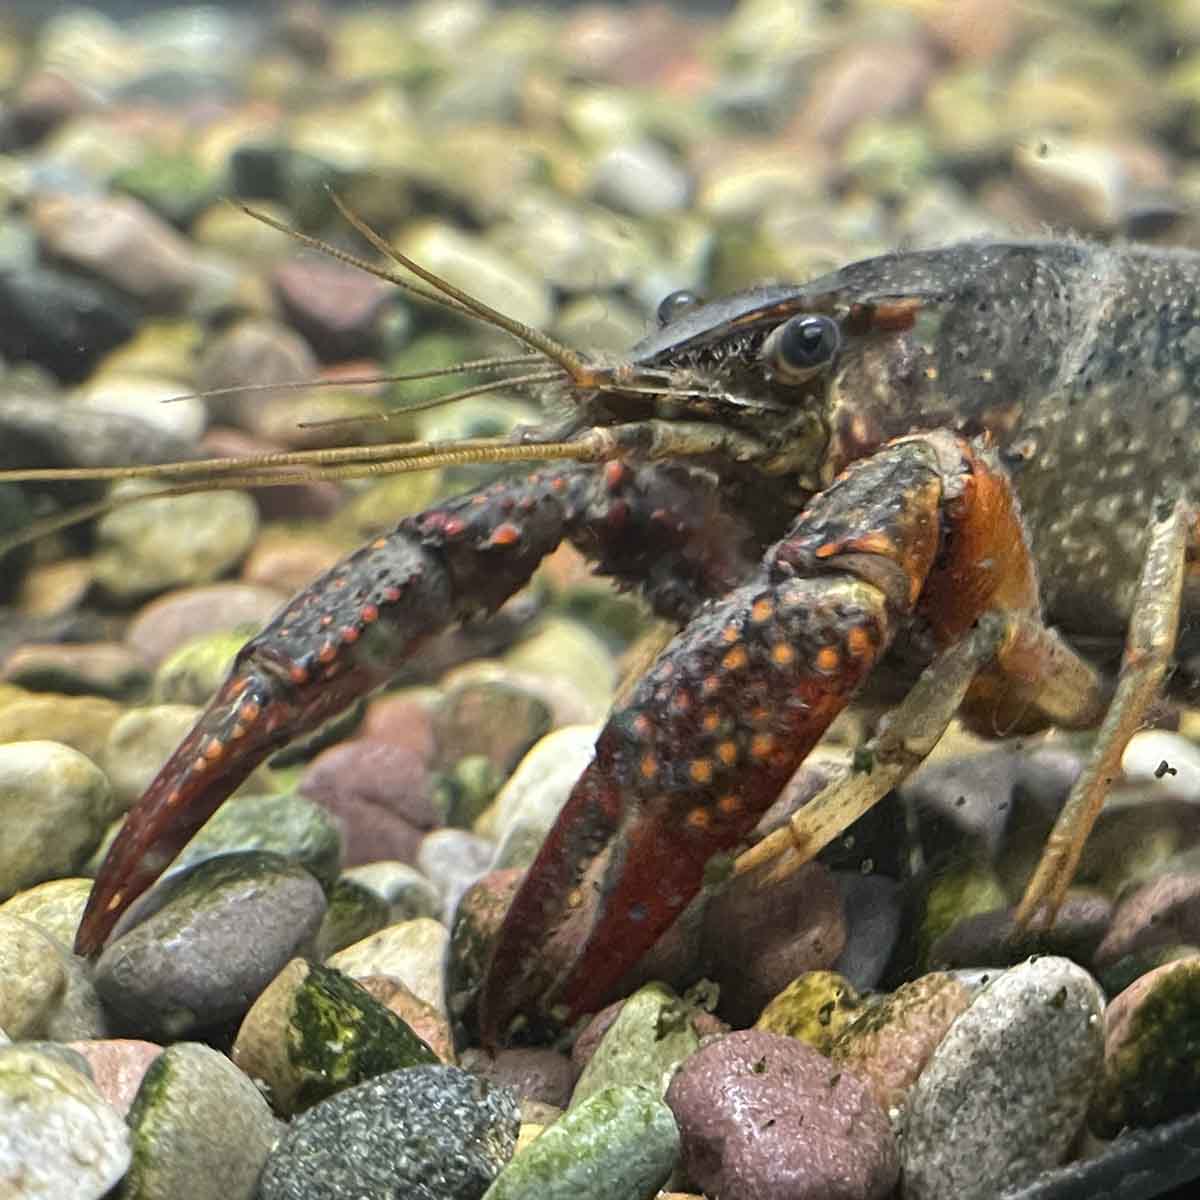 A red swamp crayfish inside an aquarium.